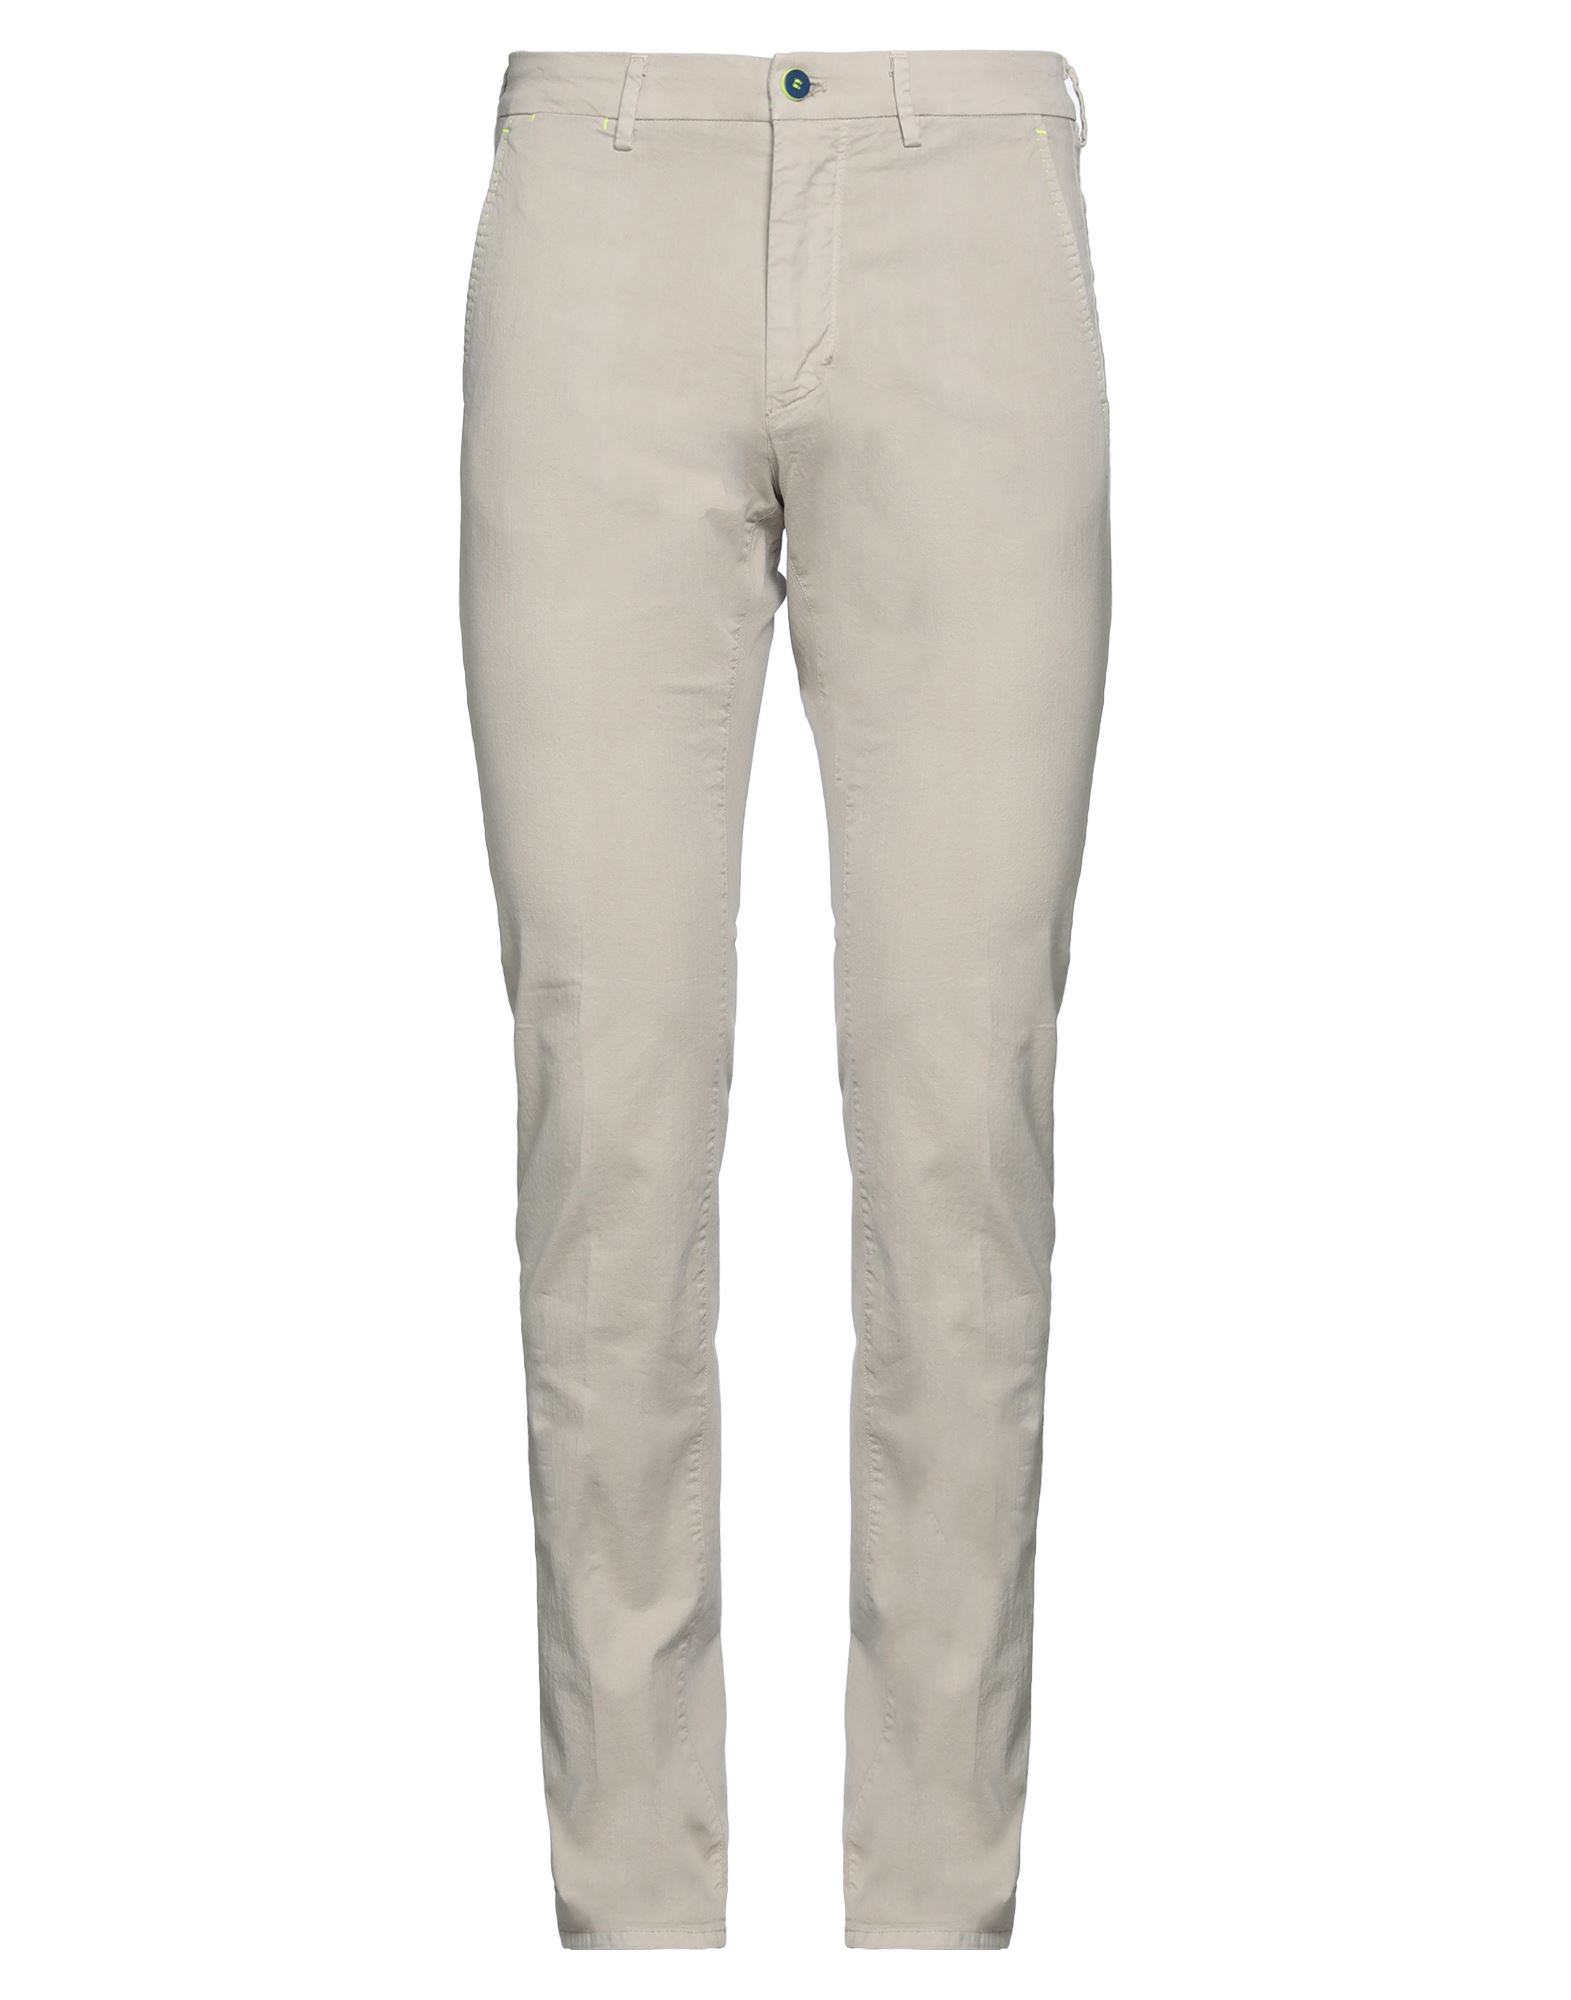 Shop Mason's Man Pants Beige Size 30 Cotton, Elastane